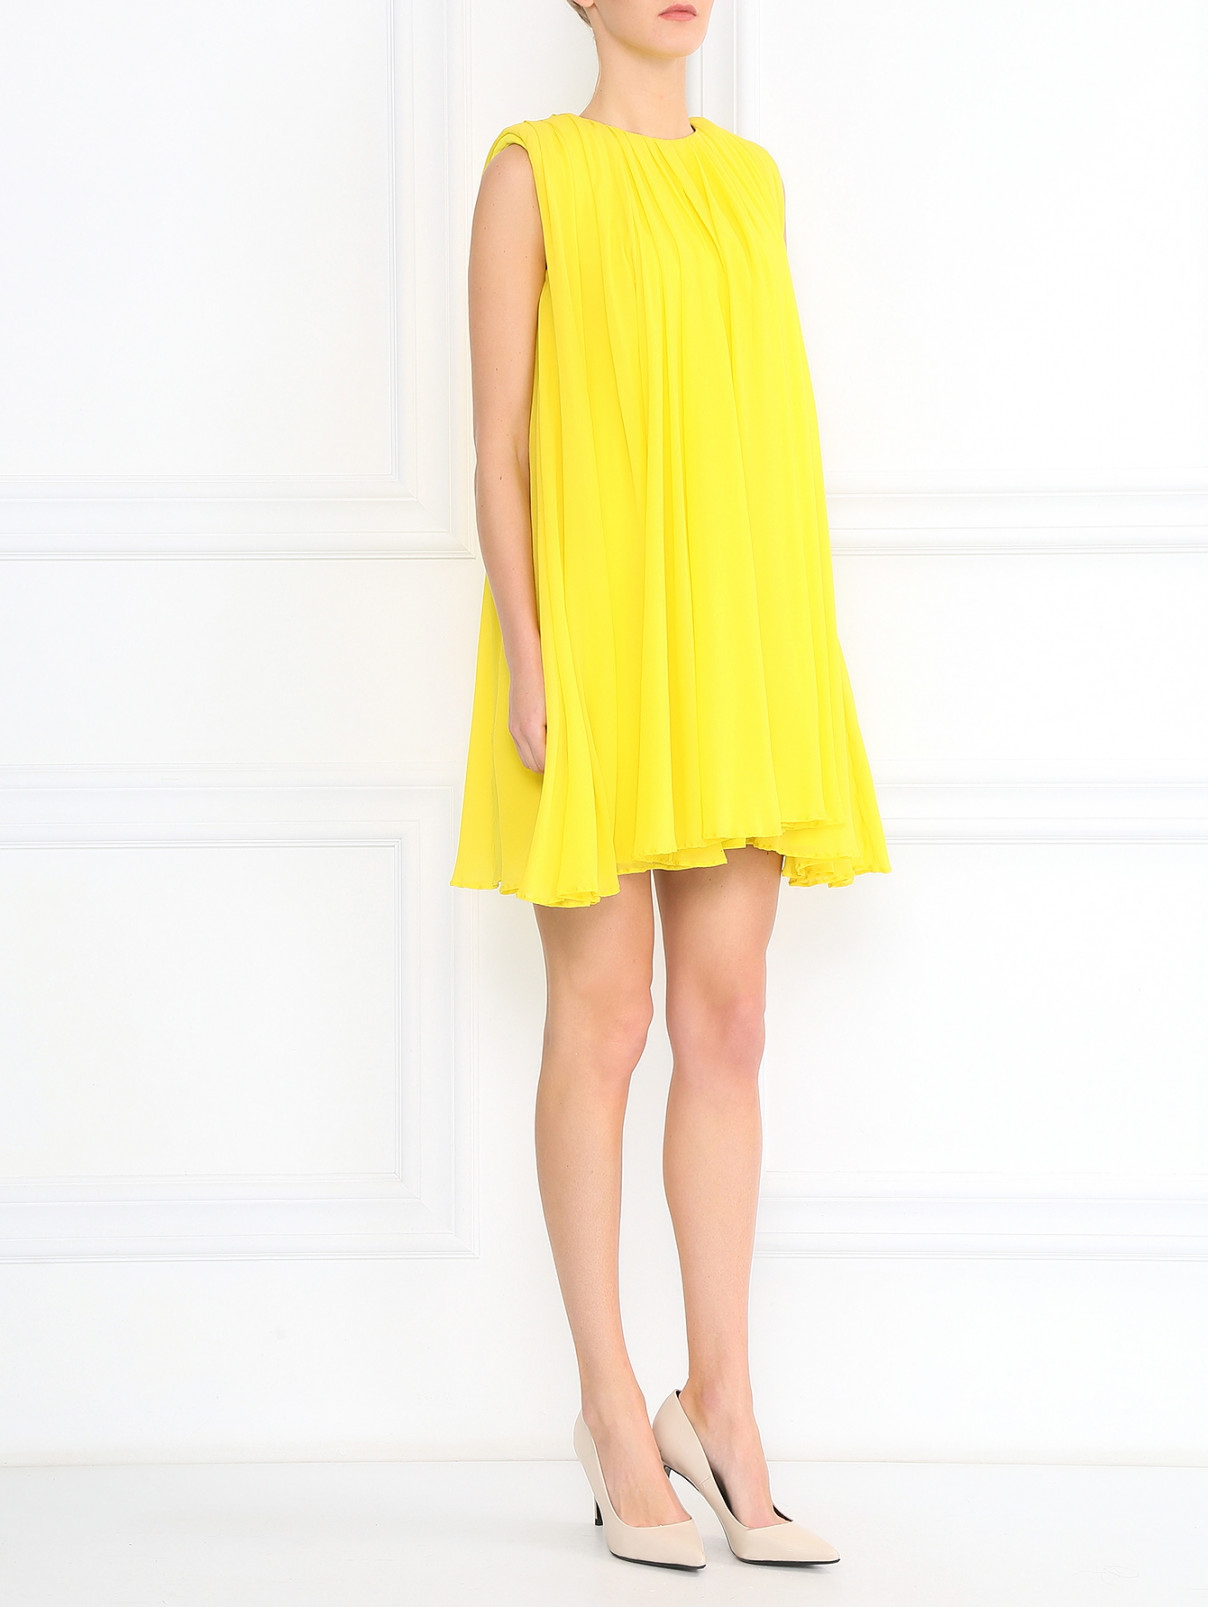 Расклешенное платье-мини из шелка Giambattista Valli  –  Модель Общий вид  – Цвет:  Желтый